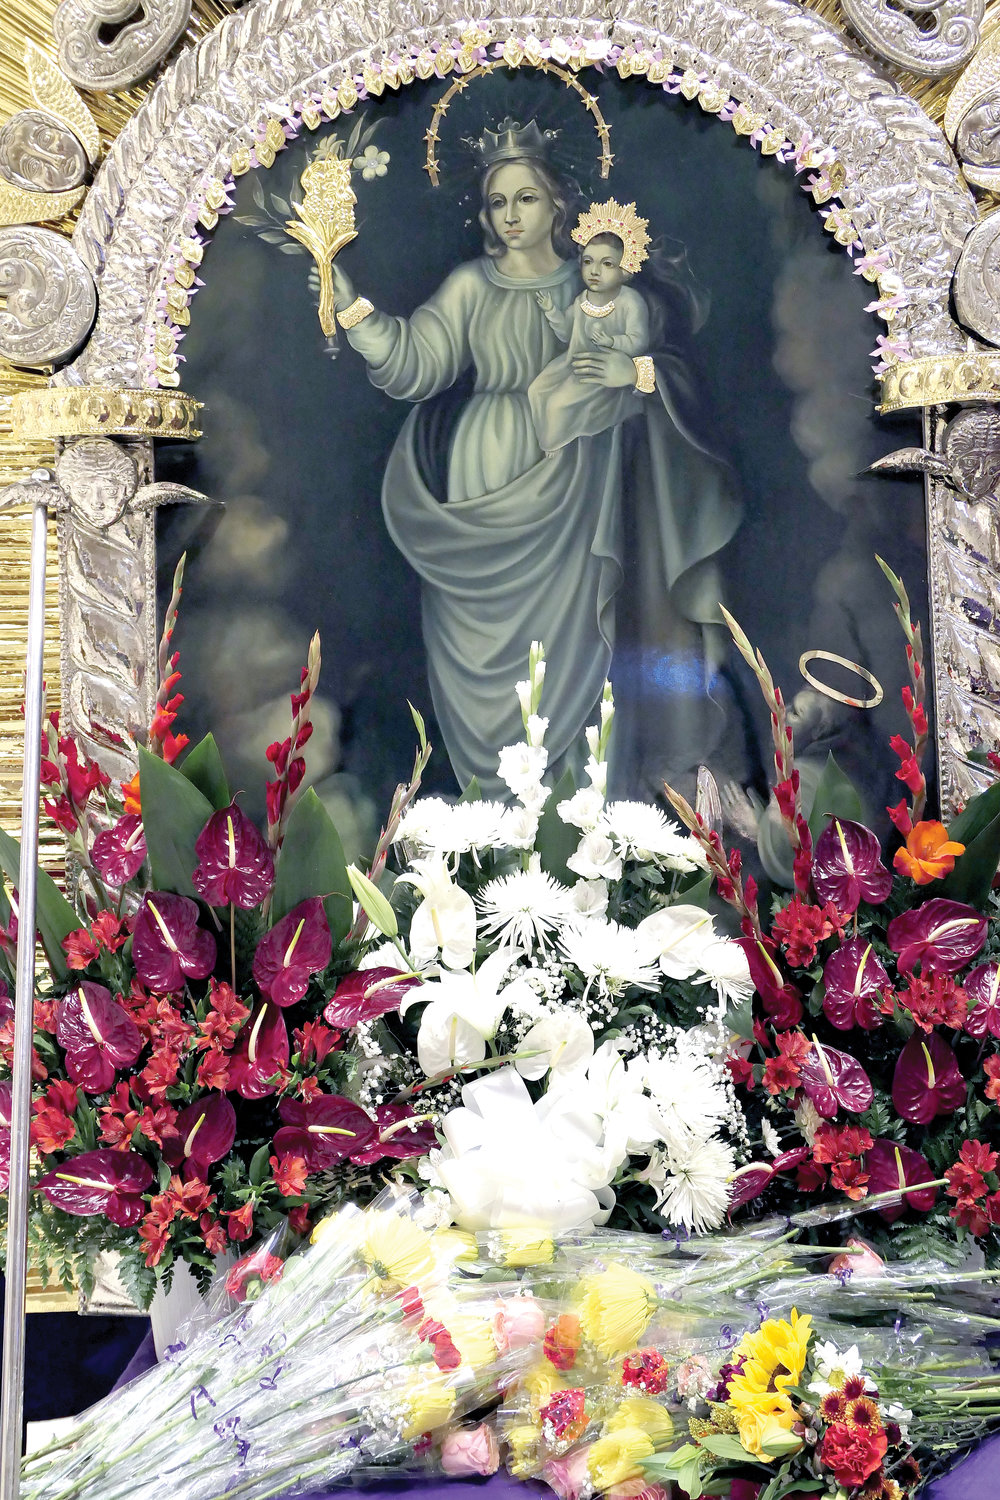 La otra parte del santuario presenta María con el Niño Jesús.